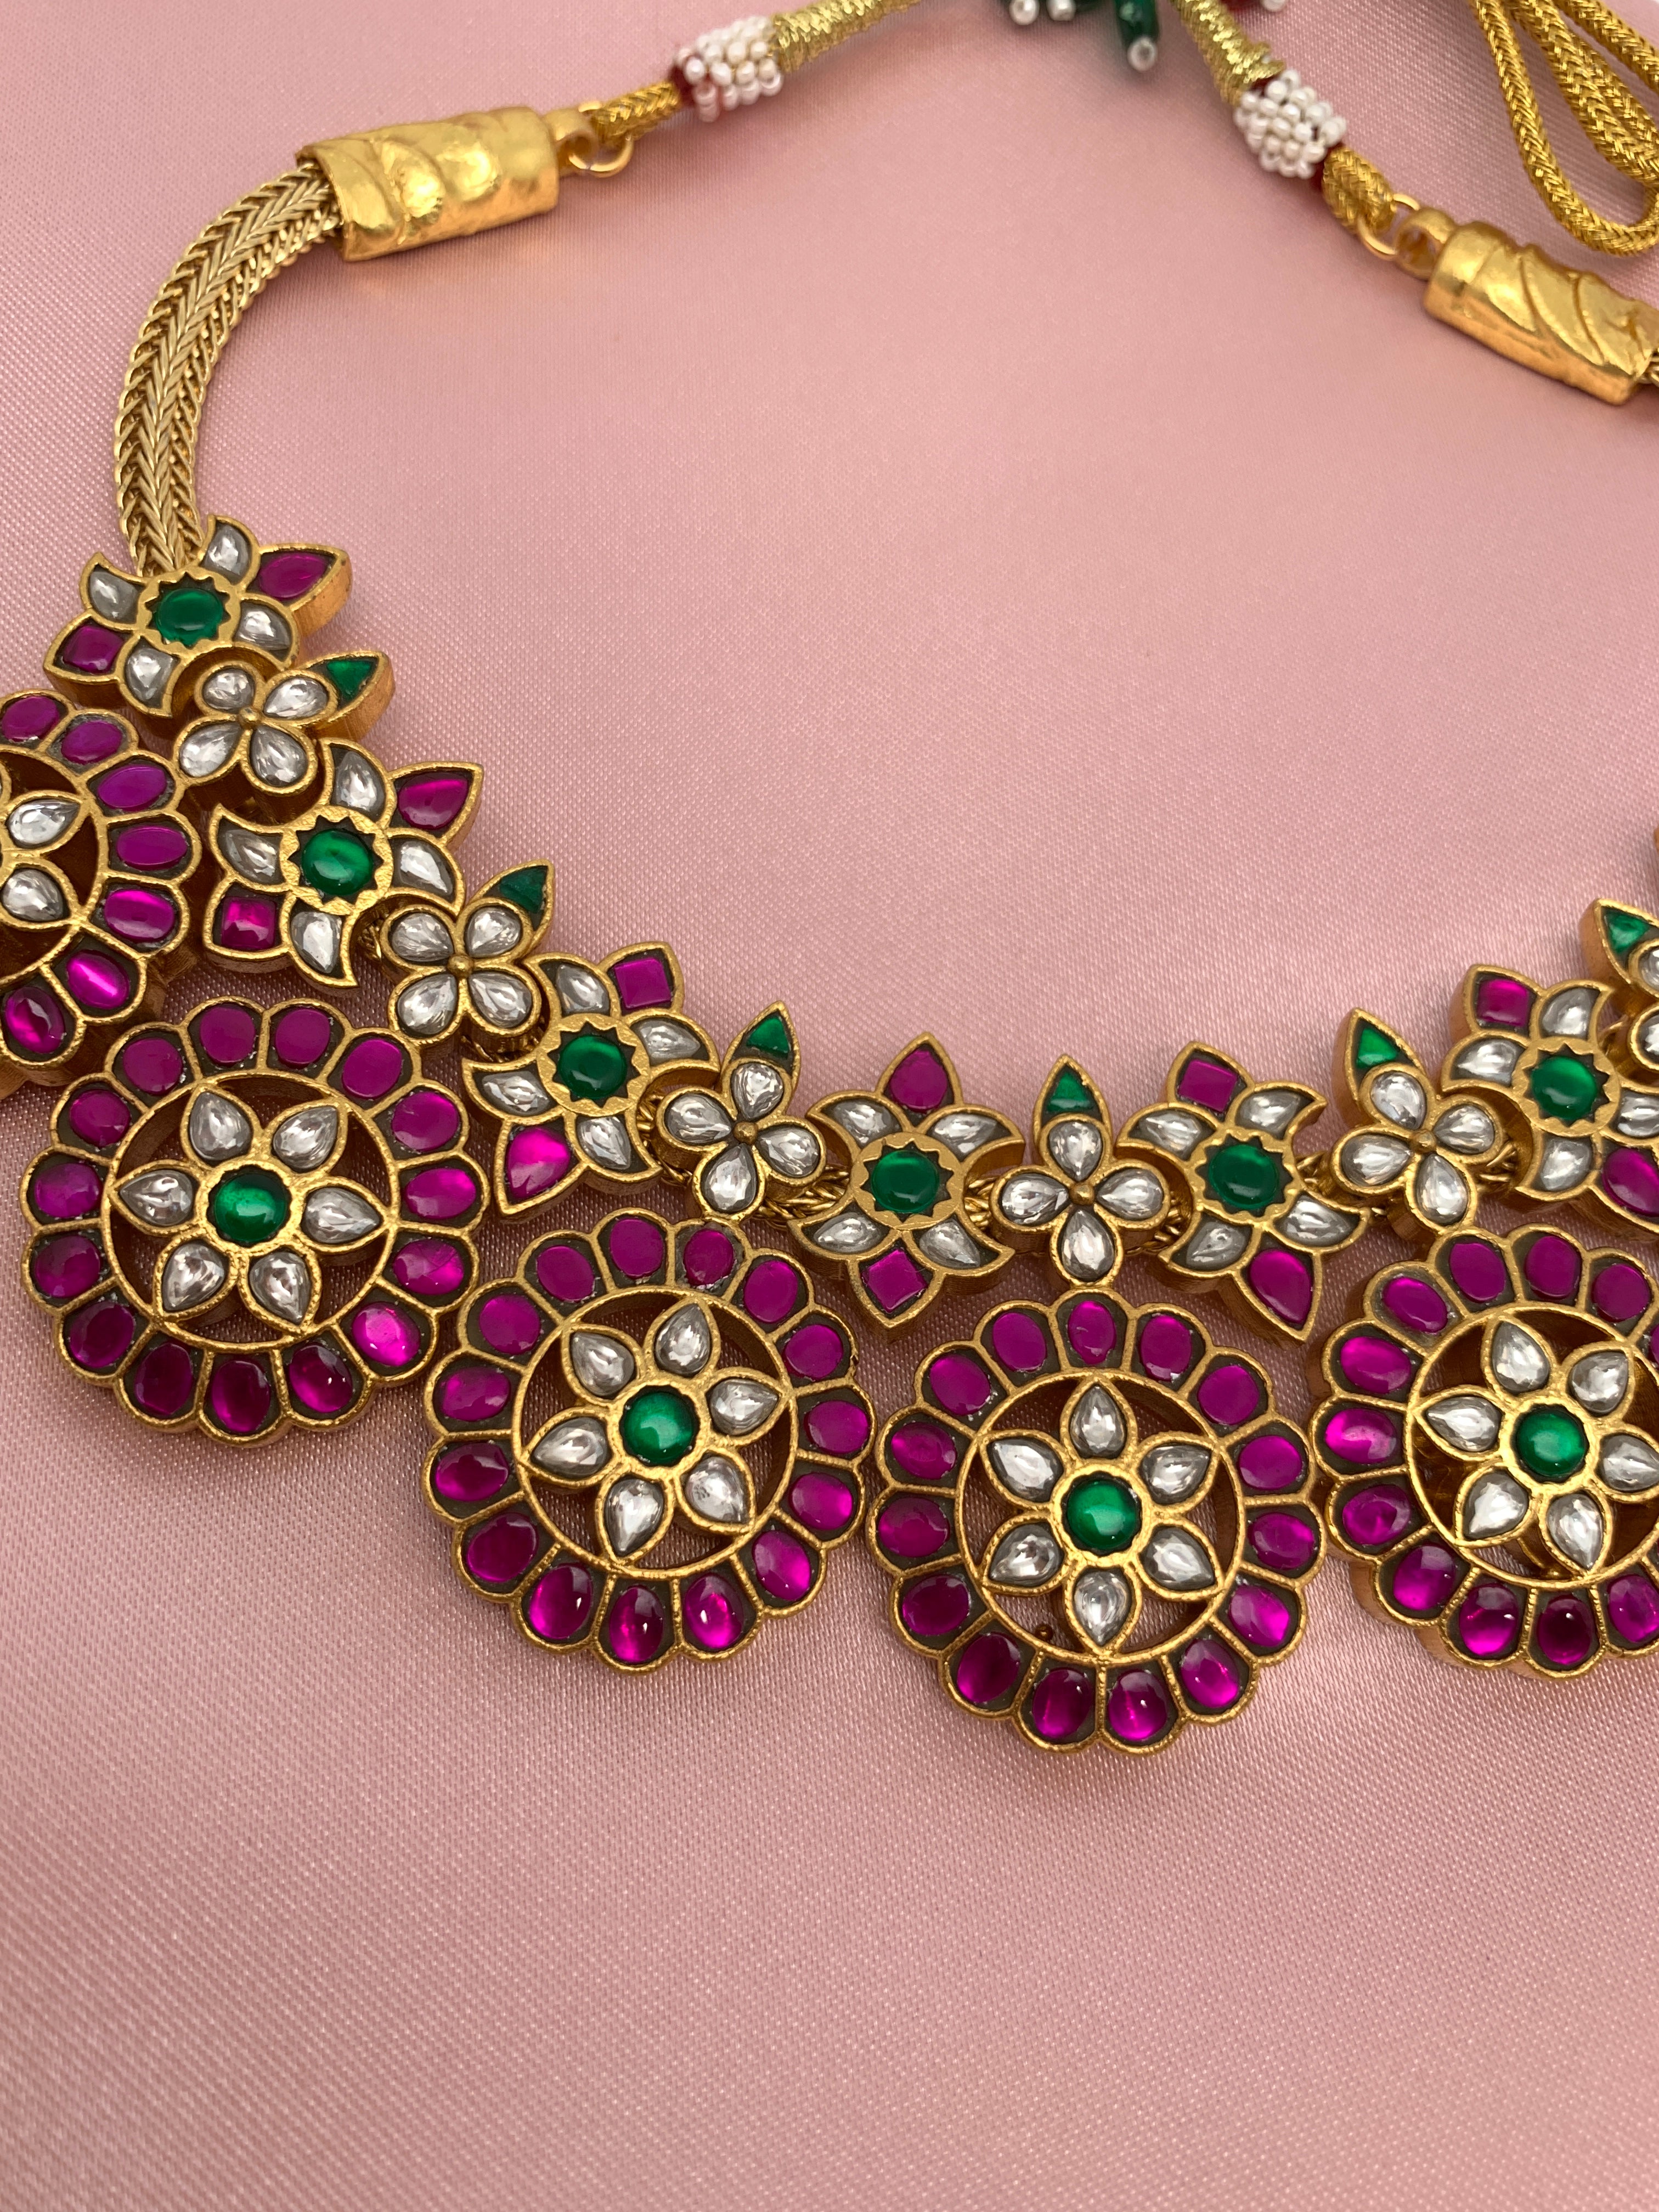 Cz Bottu Mala Necklace By Asp Fashion Jewellery – 𝗔𝘀𝗽 𝗙𝗮𝘀𝗵𝗶𝗼𝗻  𝗝𝗲𝘄𝗲𝗹𝗹𝗲𝗿𝘆